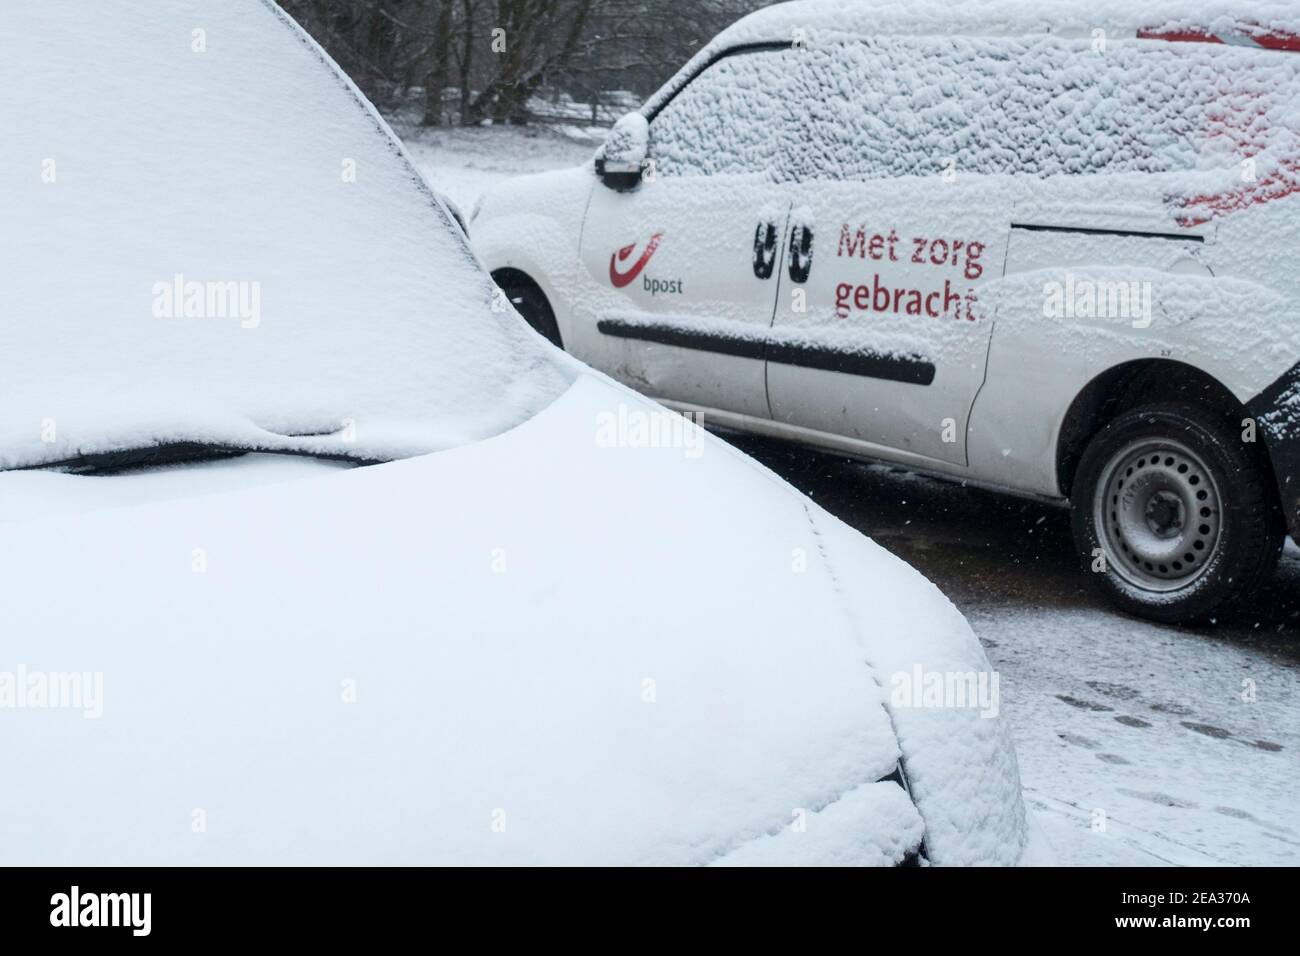 Pare-brise / pare-vent et vitres de voiture des véhicules de livraison Belge Bpost garés couverts de neige par temps froid en hiver, Belgique Banque D'Images